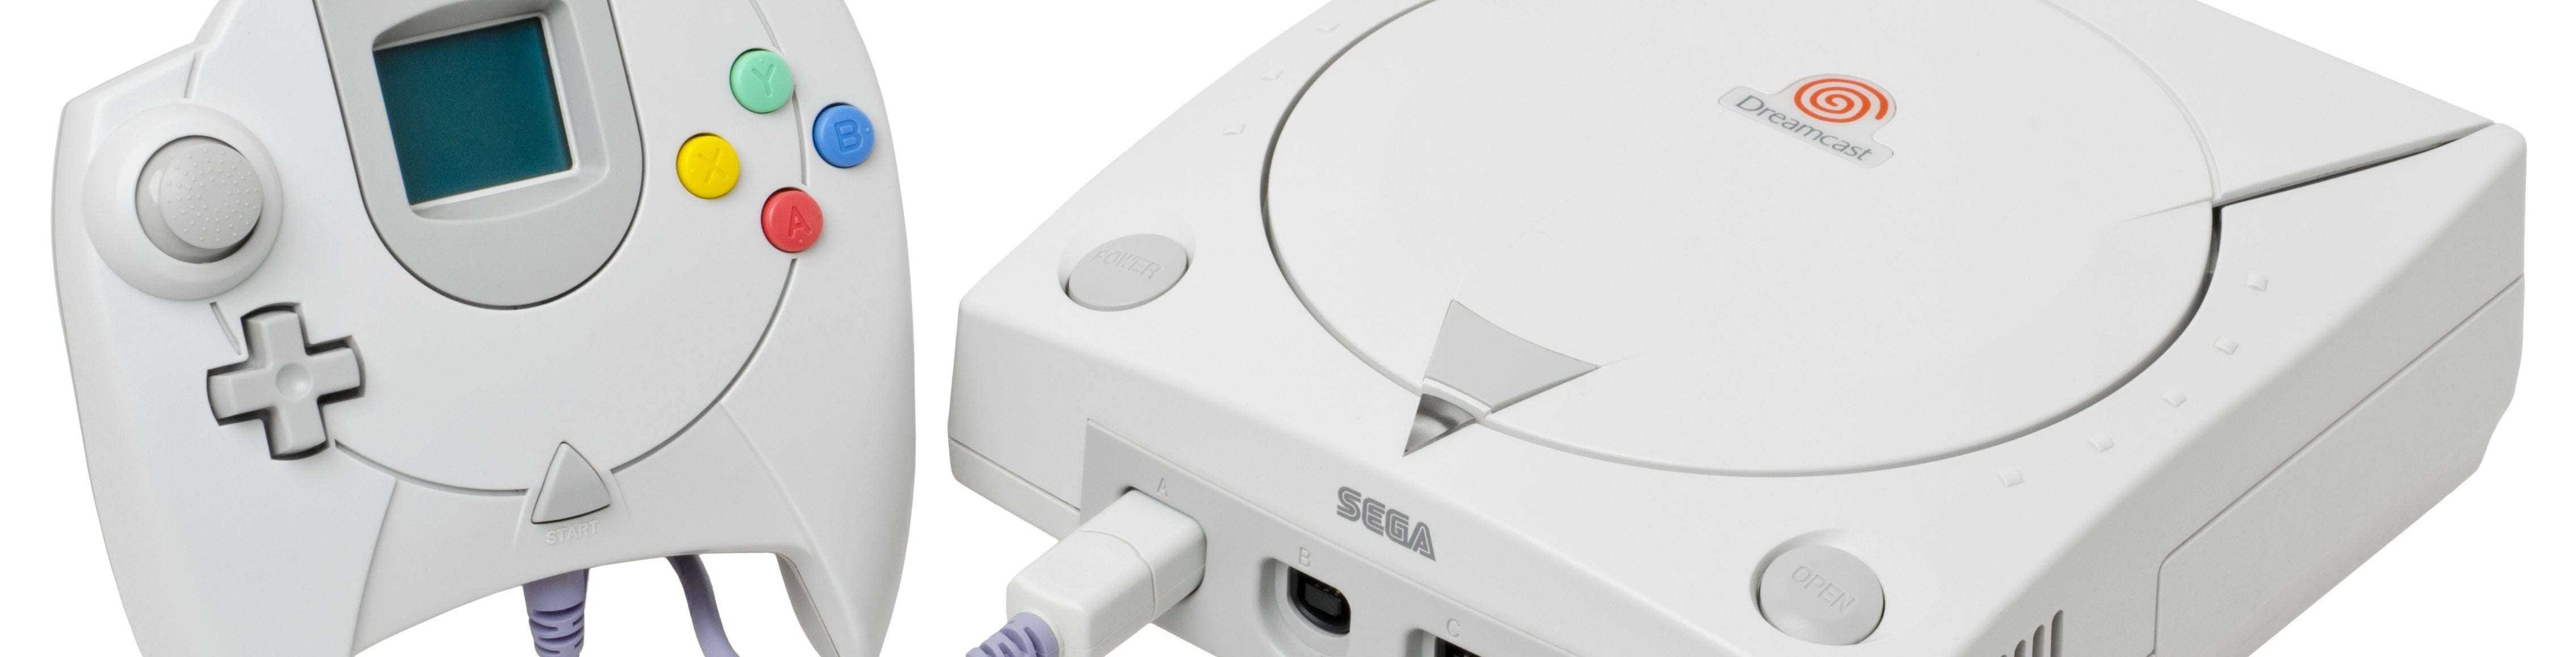 Imagen para Dreamcast: Diez años, once juegos